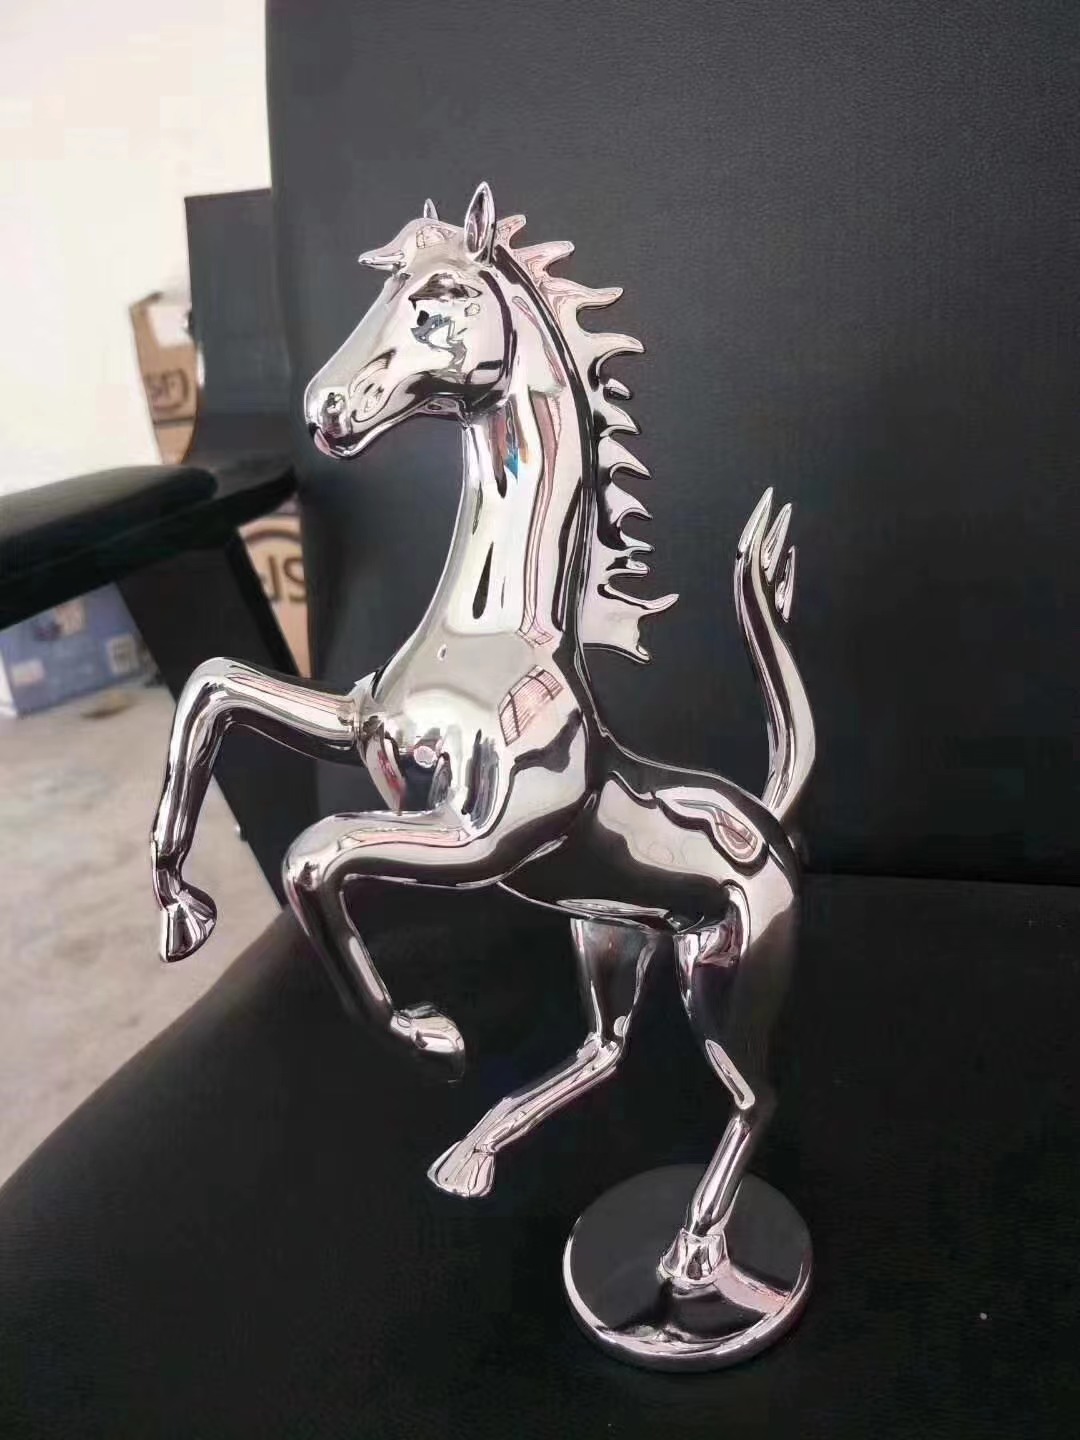 郴州3D打印不锈钢 3D打印模型 塑胶金属硅胶复模手板模型